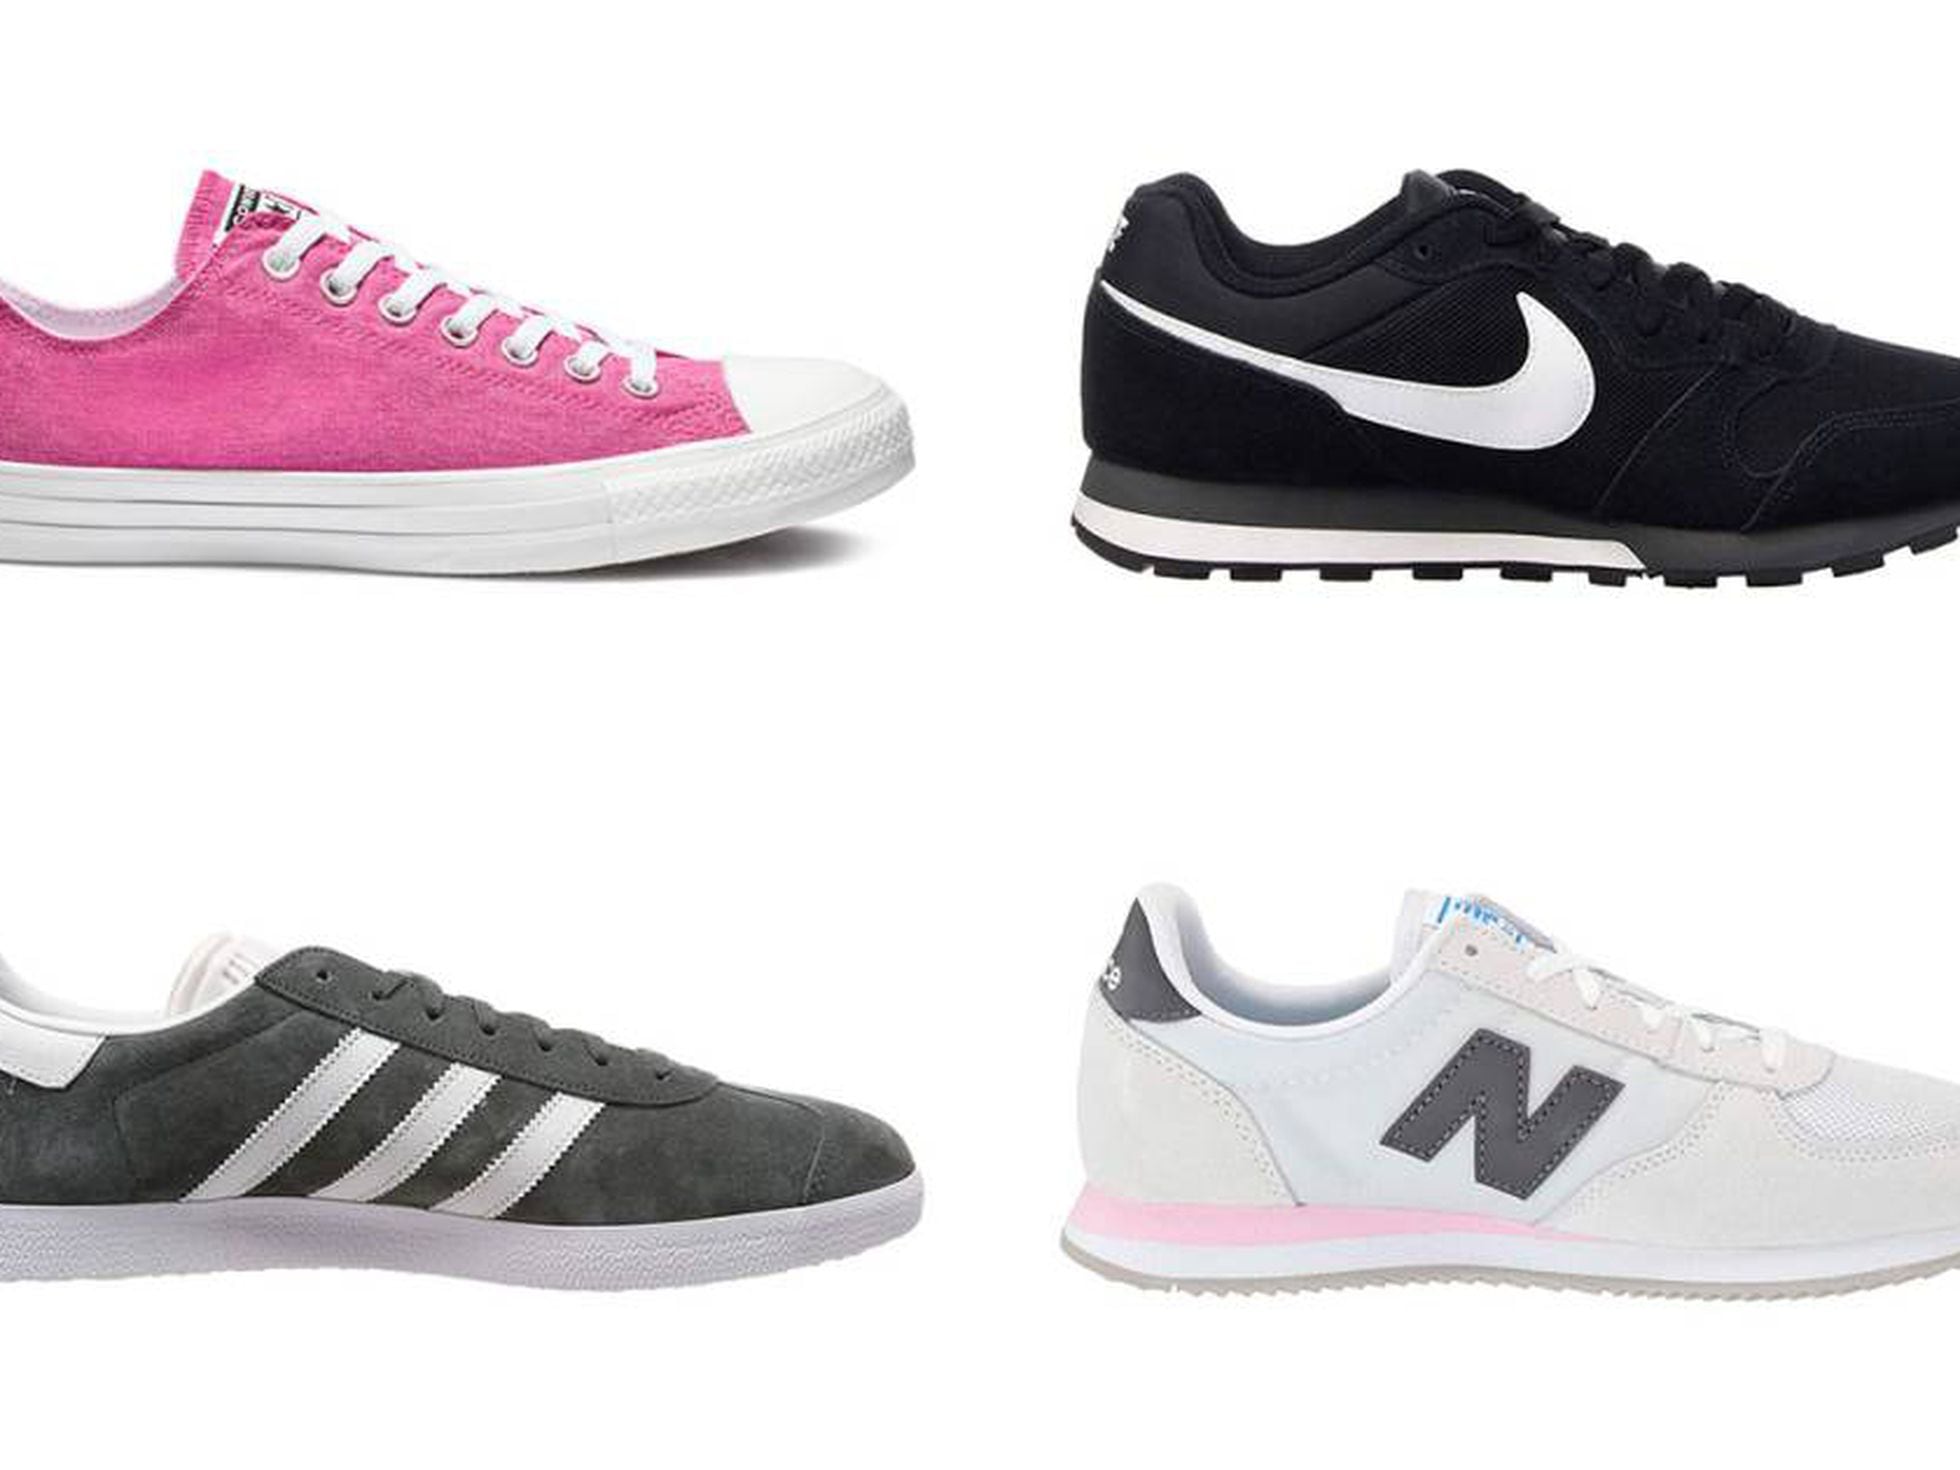 Las Nike MD Runner 2, las New Balance 220 y ofertas zapatillas | Escaparate | EL PAÍS